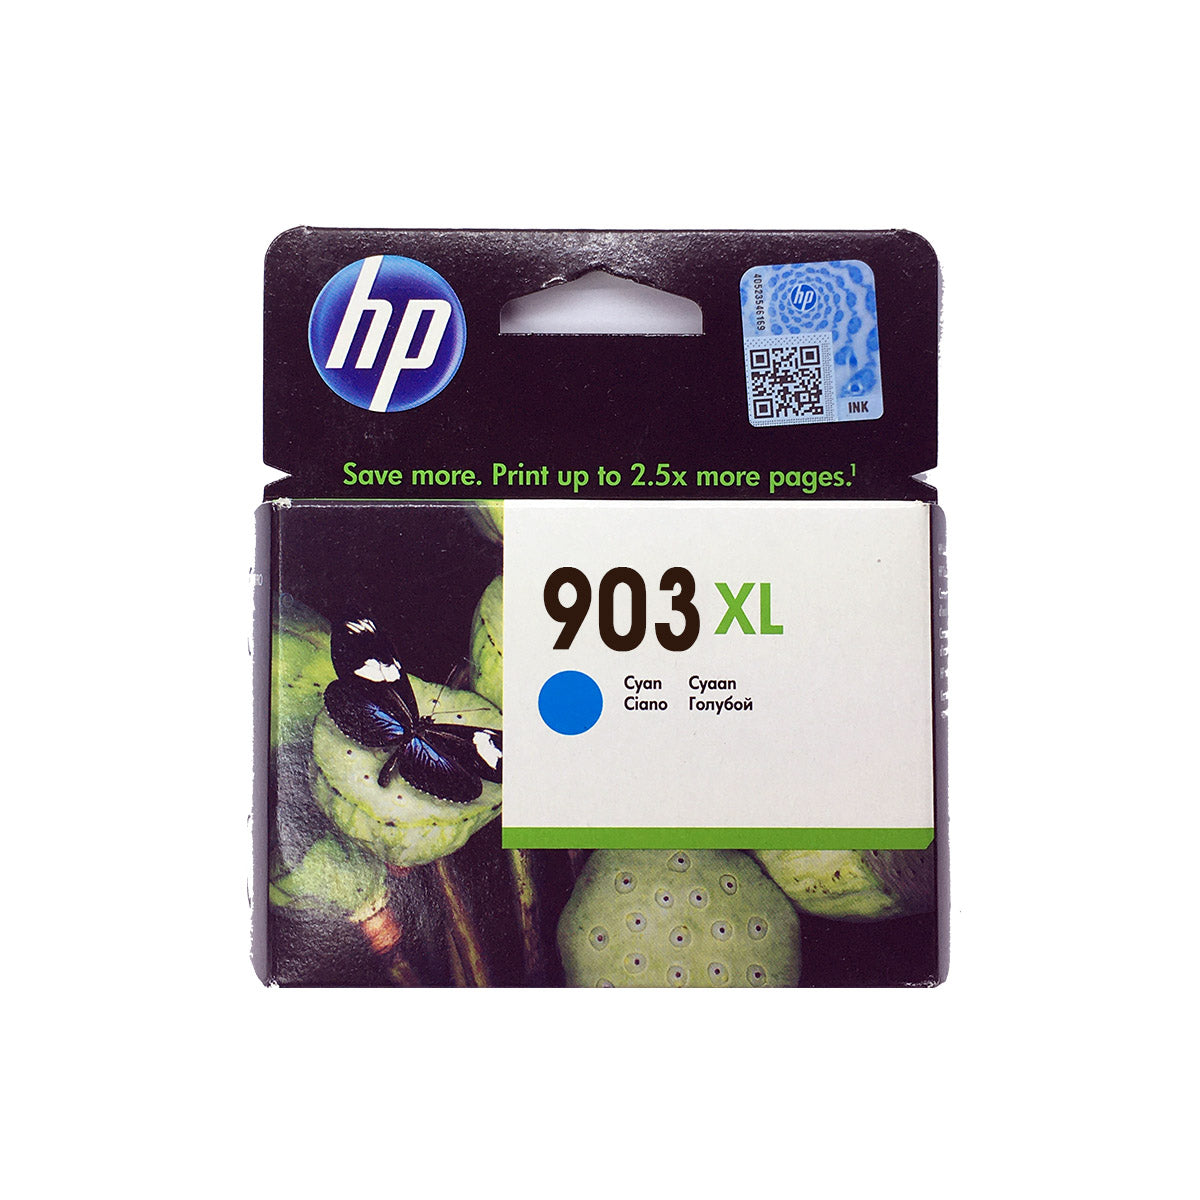 Shop HP 903XL Original Ink Cartridge Cyan Color online in Abu Dhabi, UAE